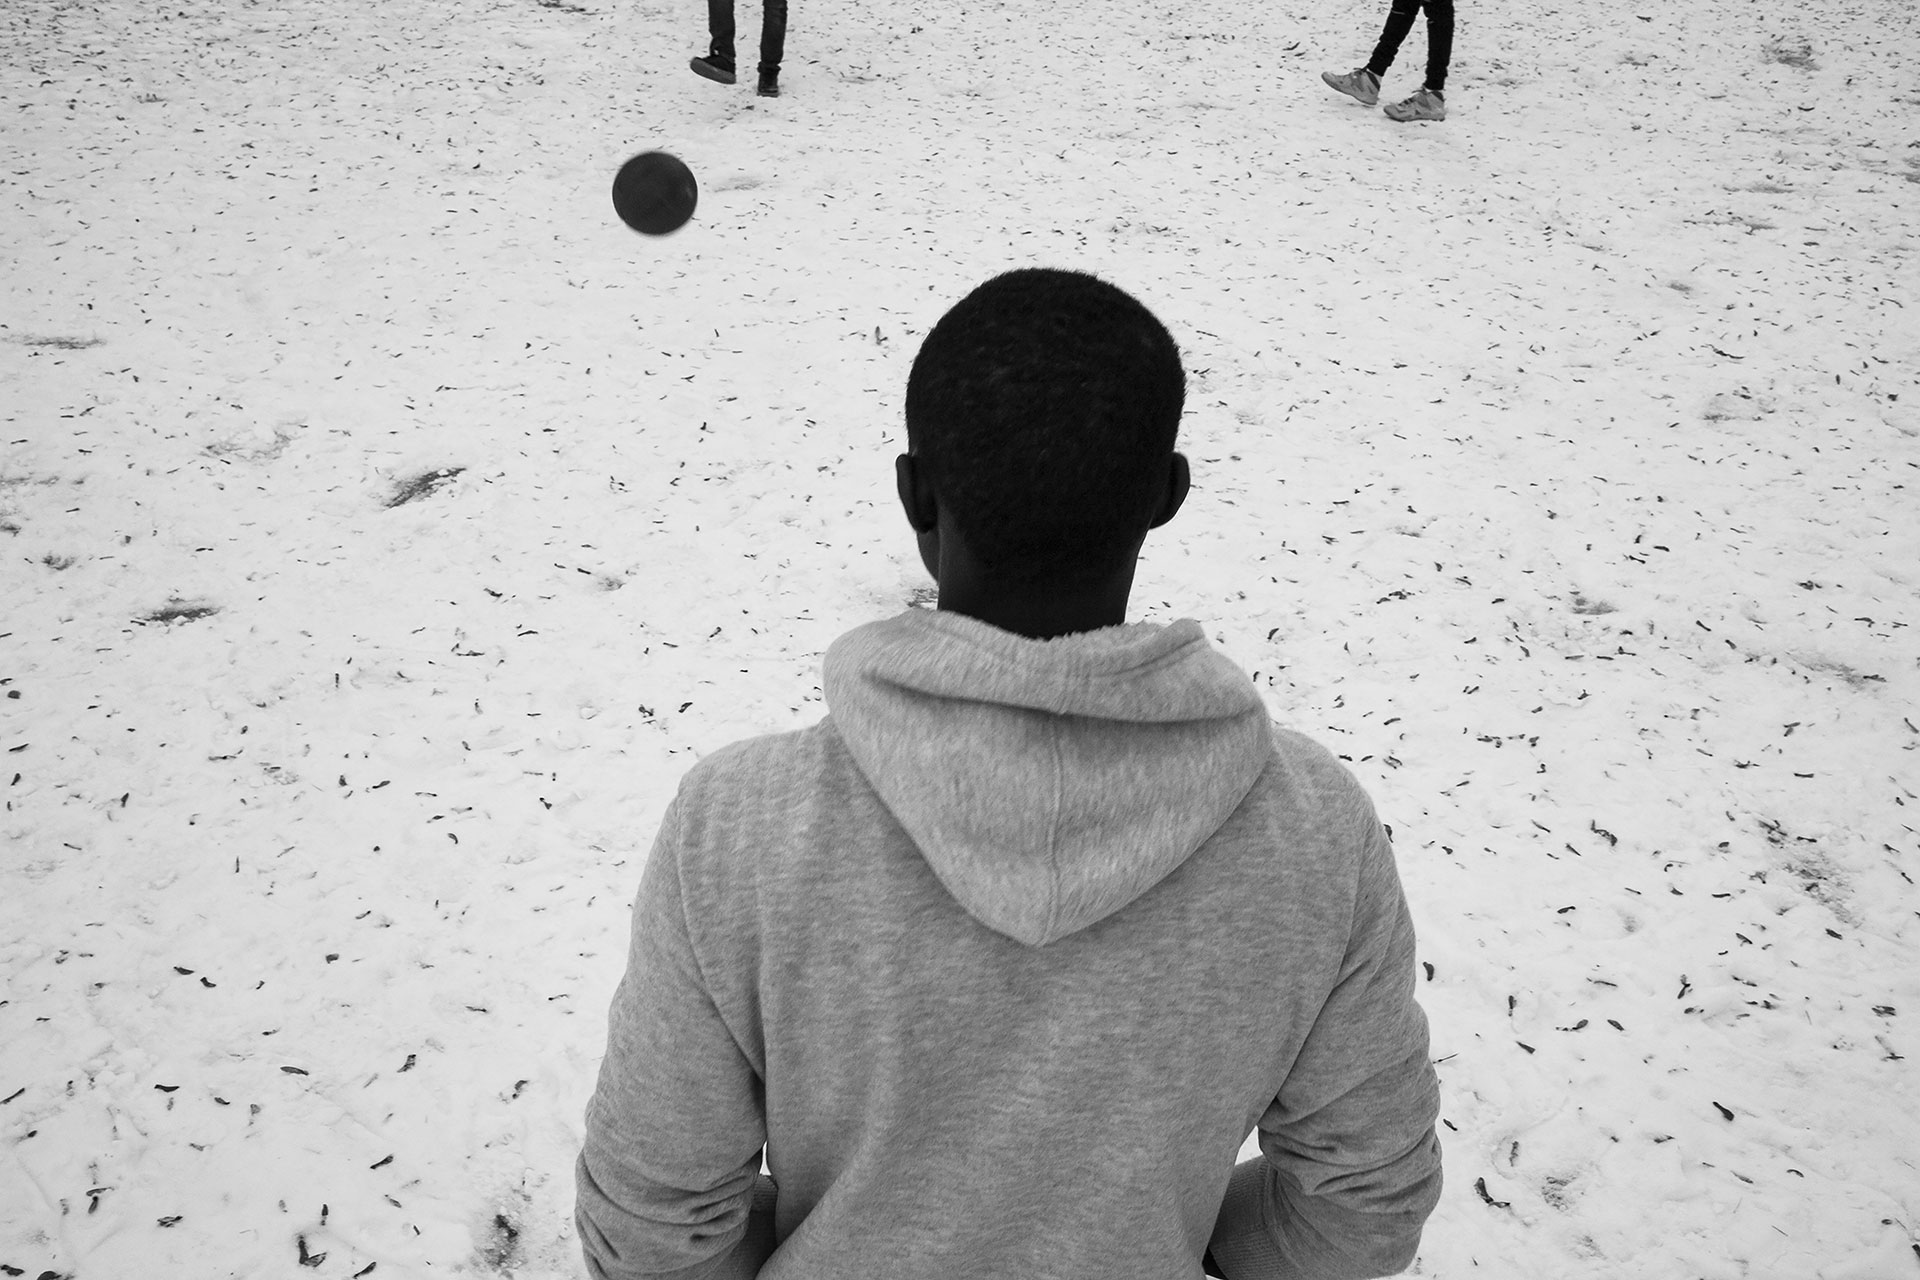 Baba, de Senegal, juega al fútbol con Malick, de Gambia, y Mohammed, de Malí, en un parque cubierto de nieve cercano al centro donde viven. Malick, al igual que otros compañeros, vio la nieve por primera vez durante el invierno de 2017.